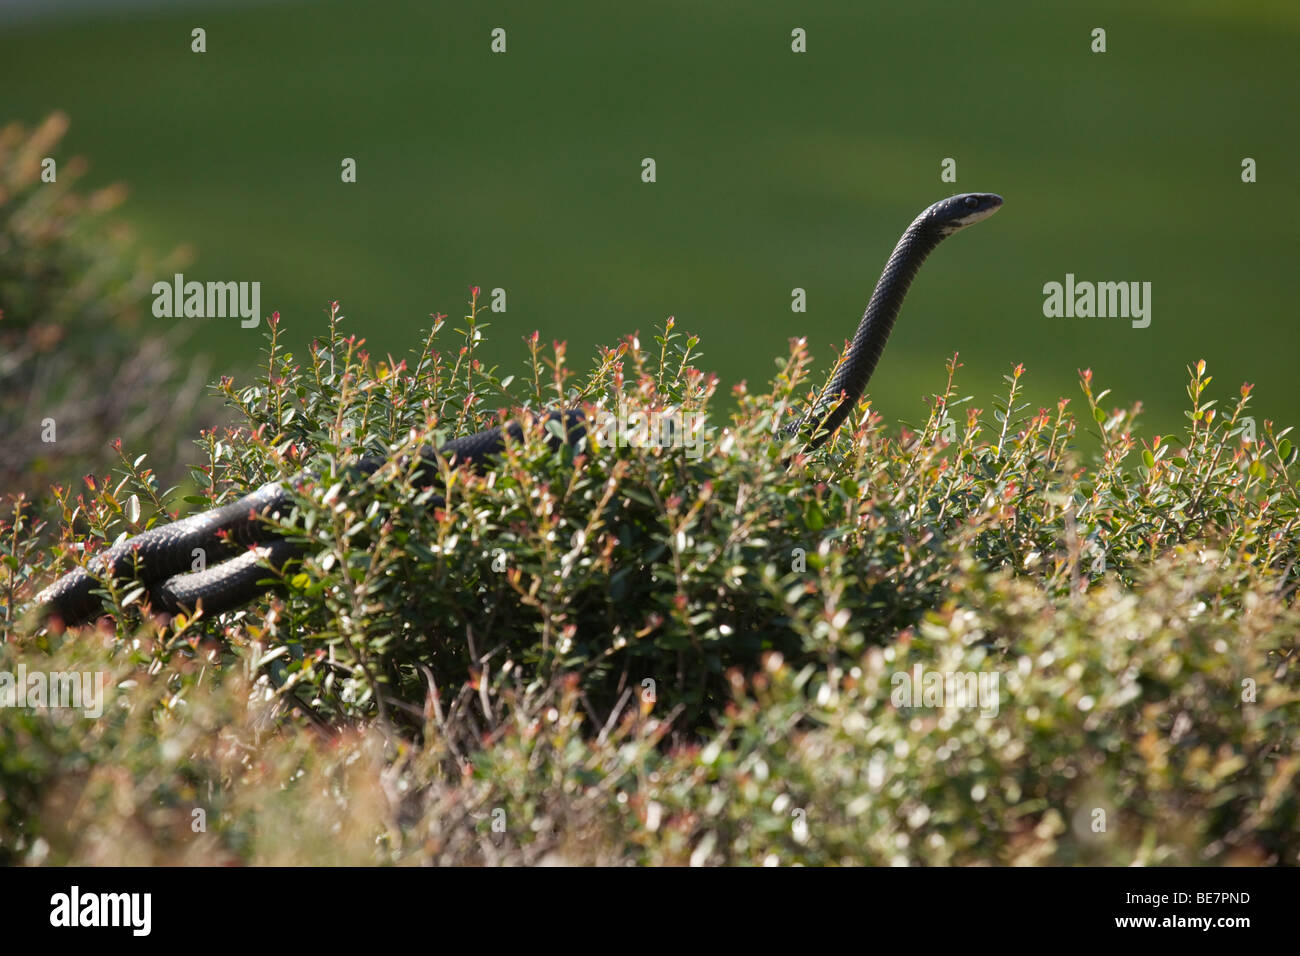 Black racer snake emerging from a shrub Stock Photo